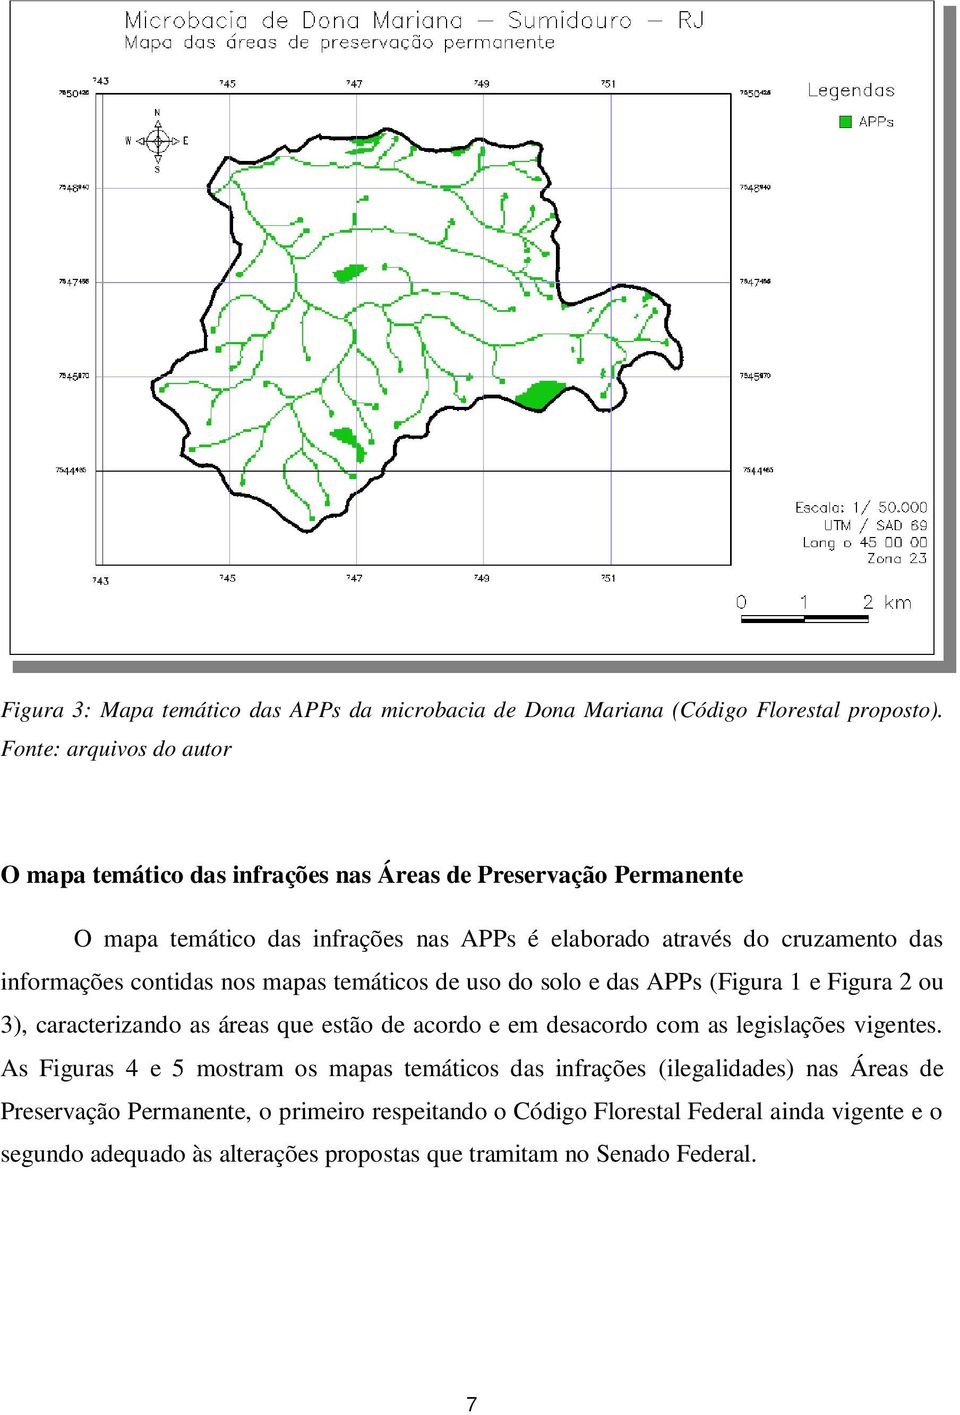 informações contidas nos mapas temáticos de uso do solo e das APPs (Figura 1 e Figura 2 ou 3), caracterizando as áreas que estão de acordo e em desacordo com as legislações